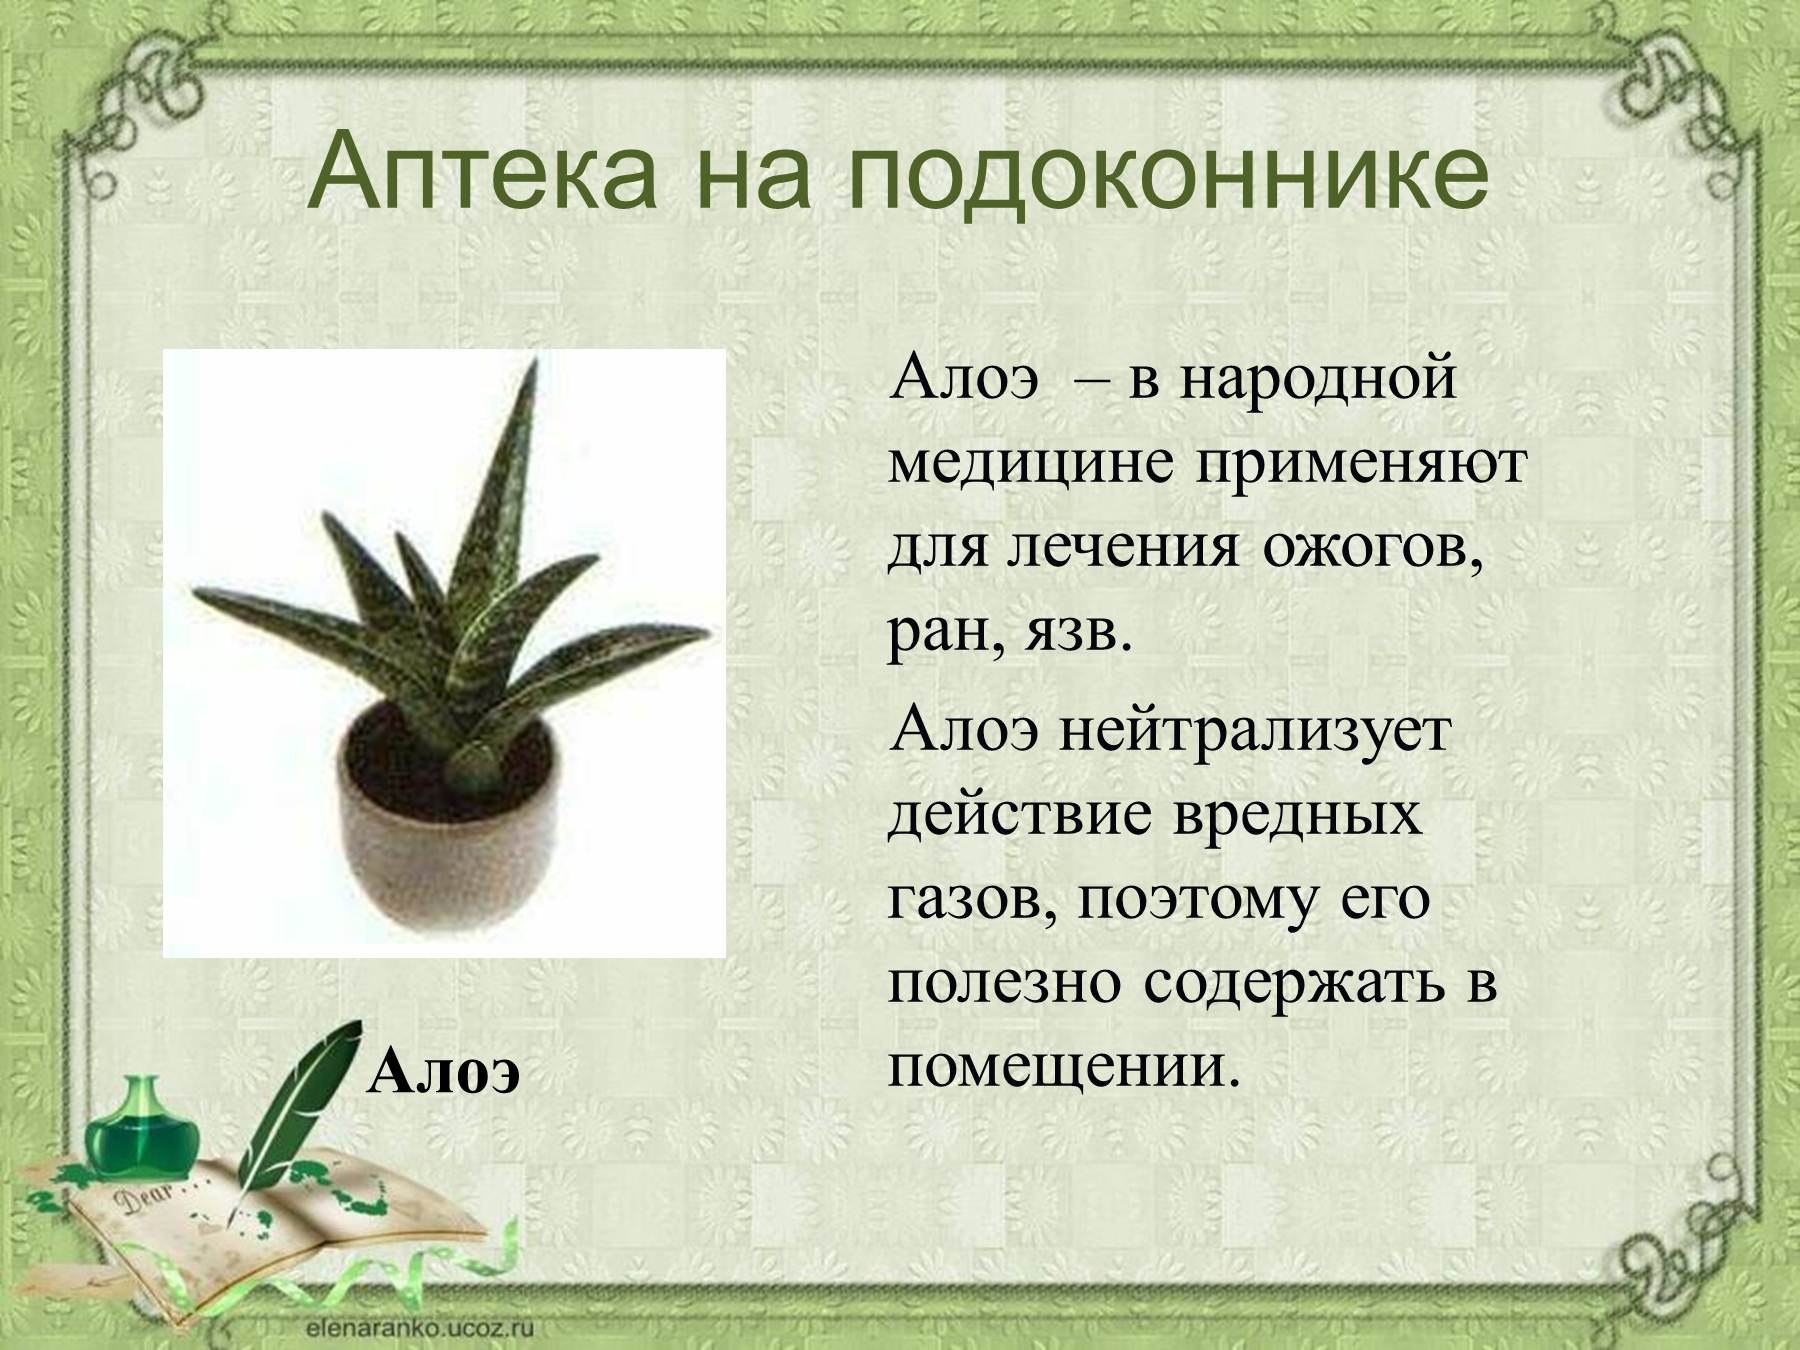 Как пишется алоэ. Алоэ комнатное растение. Алоэ комнатное растение описание. Сообщение о комнатном растении. Рассказ о комнатном растении.